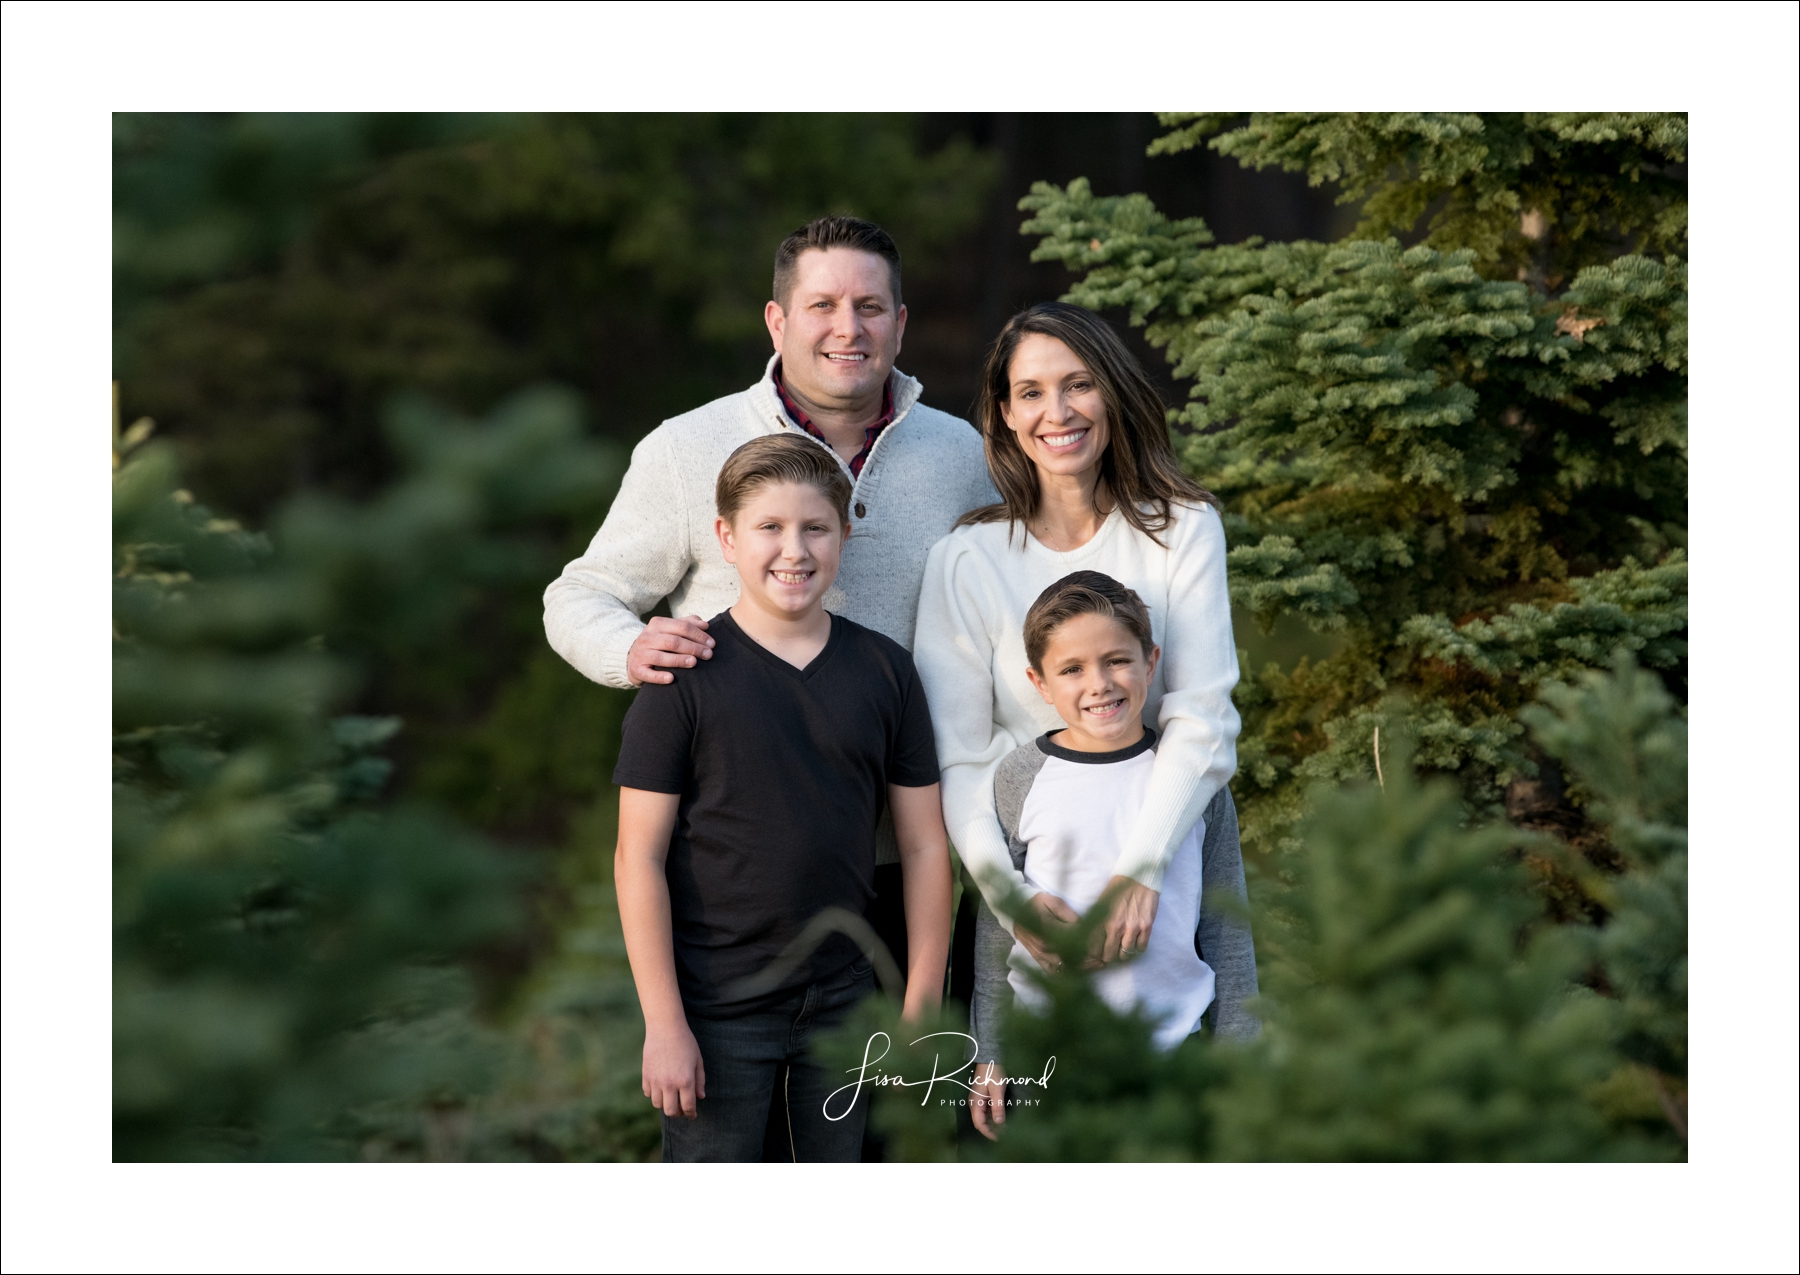 The Gustafson Family Photography at Harris Tree Farm 2018